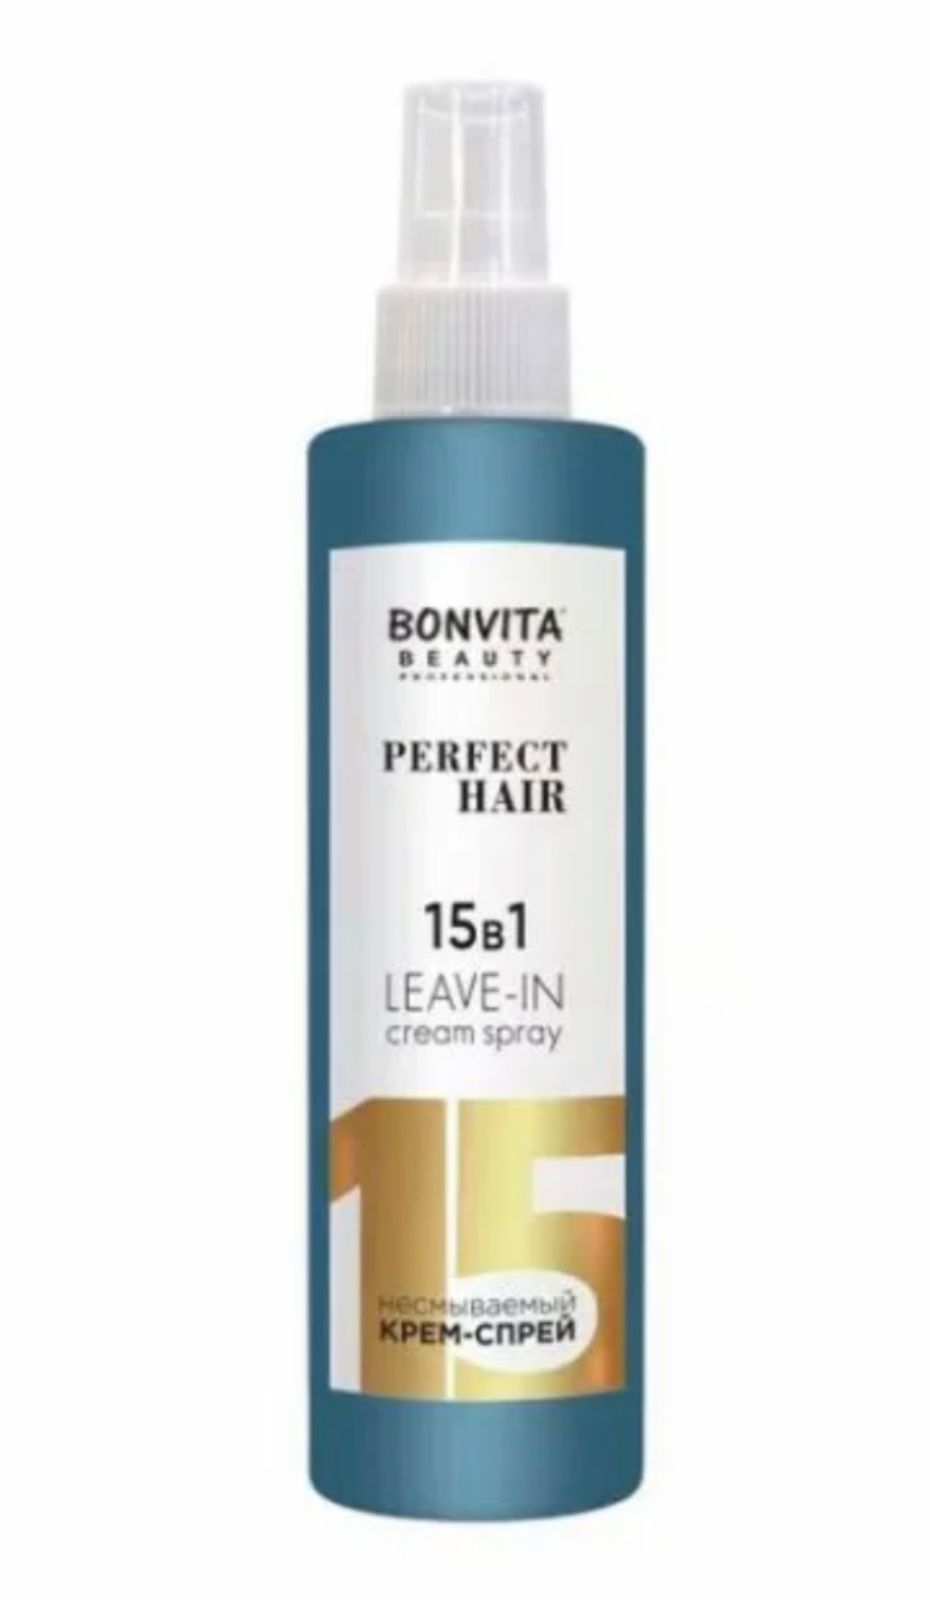 Мультифункциональный несмываемый крем-спрей Bonvita Beauty perfect hair 15 в 1 250 мл